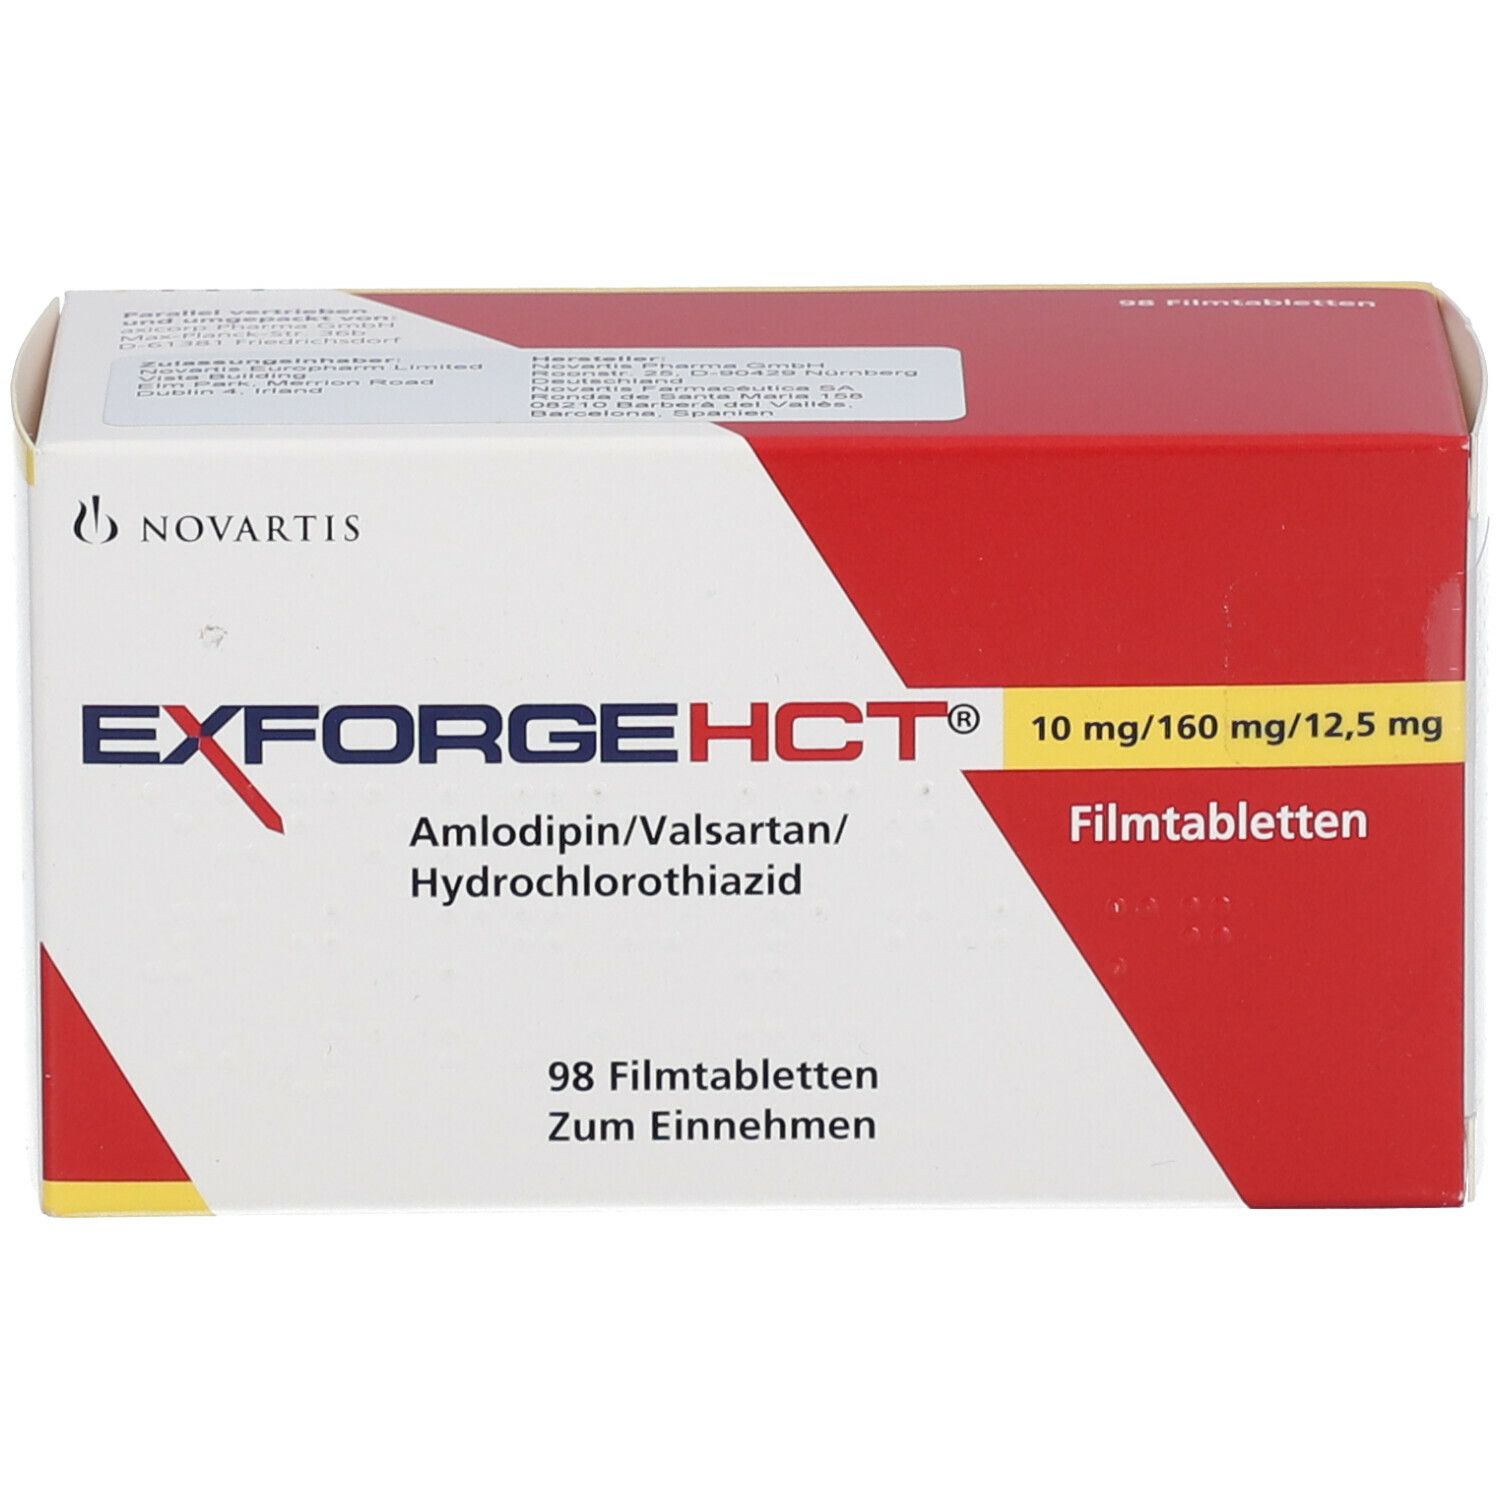 EXFROGE HCT® 10 mg/160 mg/12,5 mg